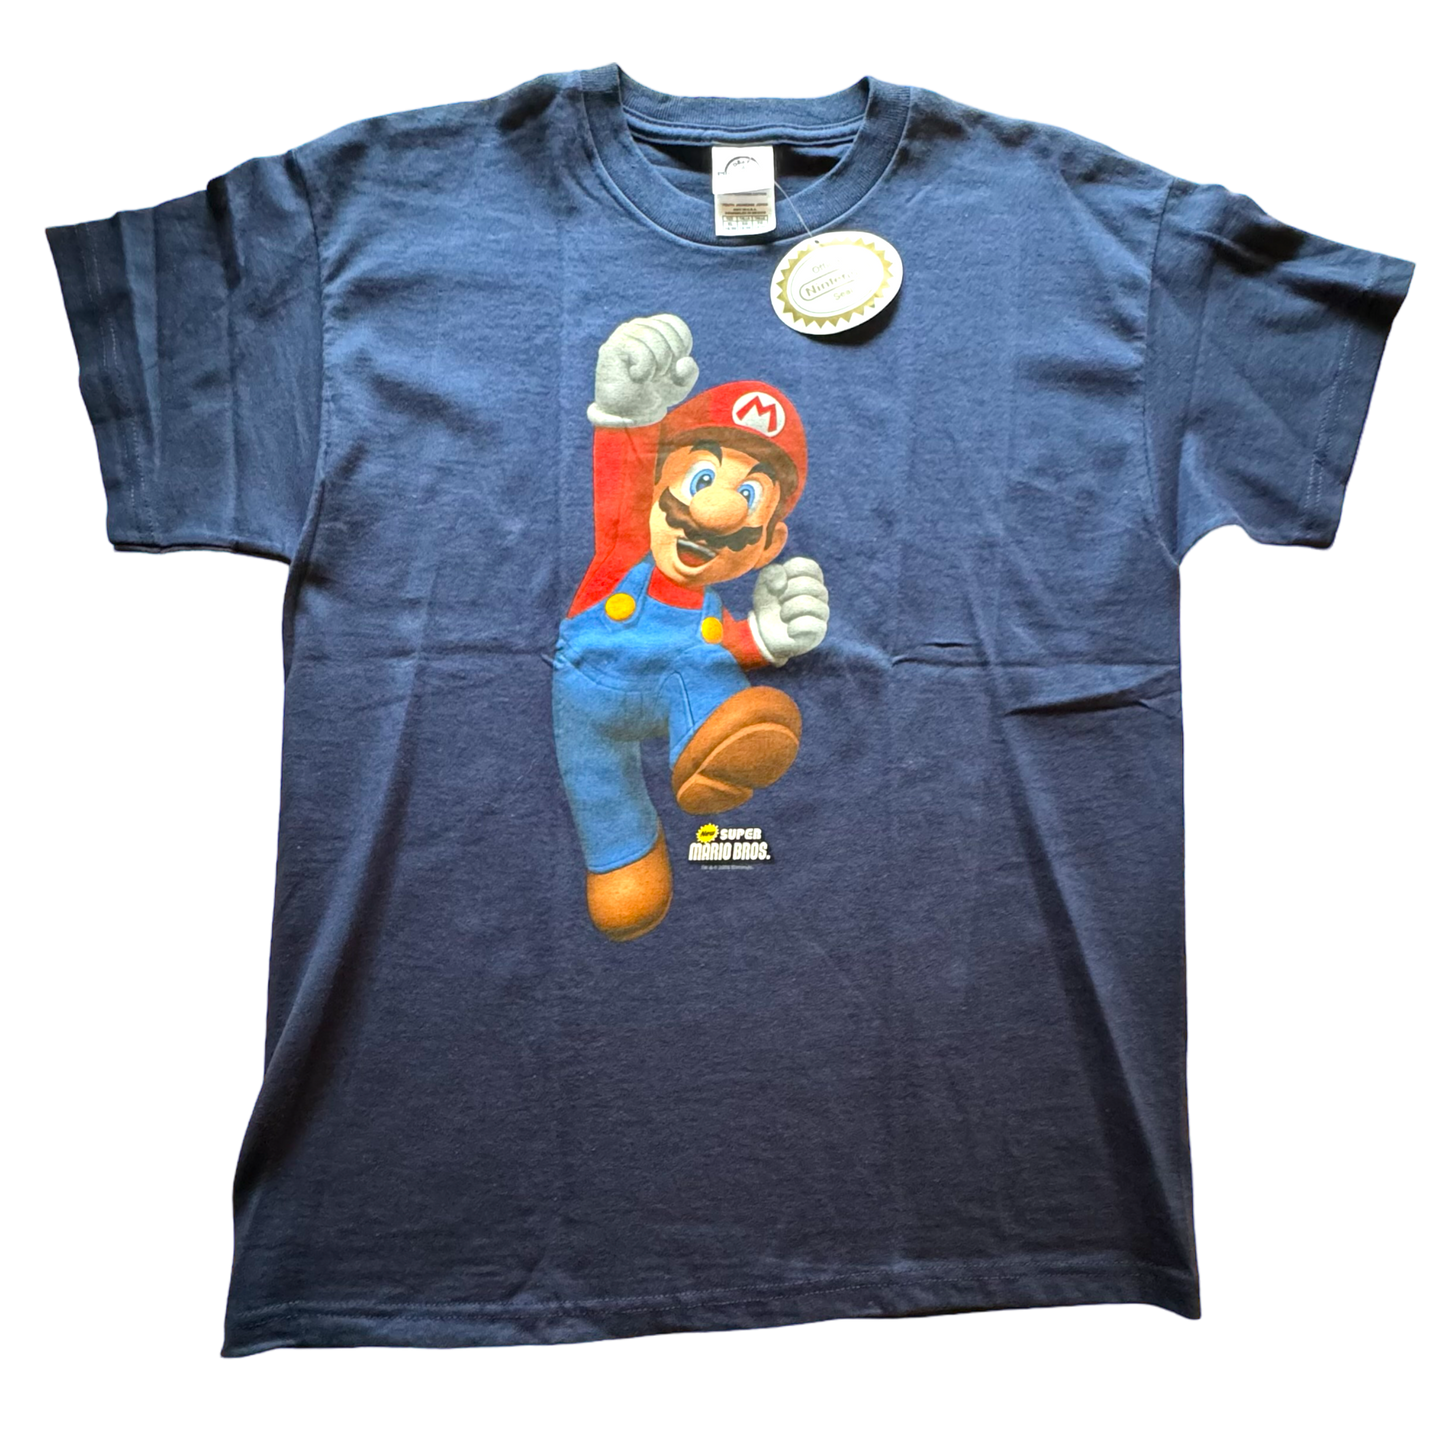 Delta x Nintendo - Super Mario Bros Mario Graphic Vintage 2006 Youth T-Shirt